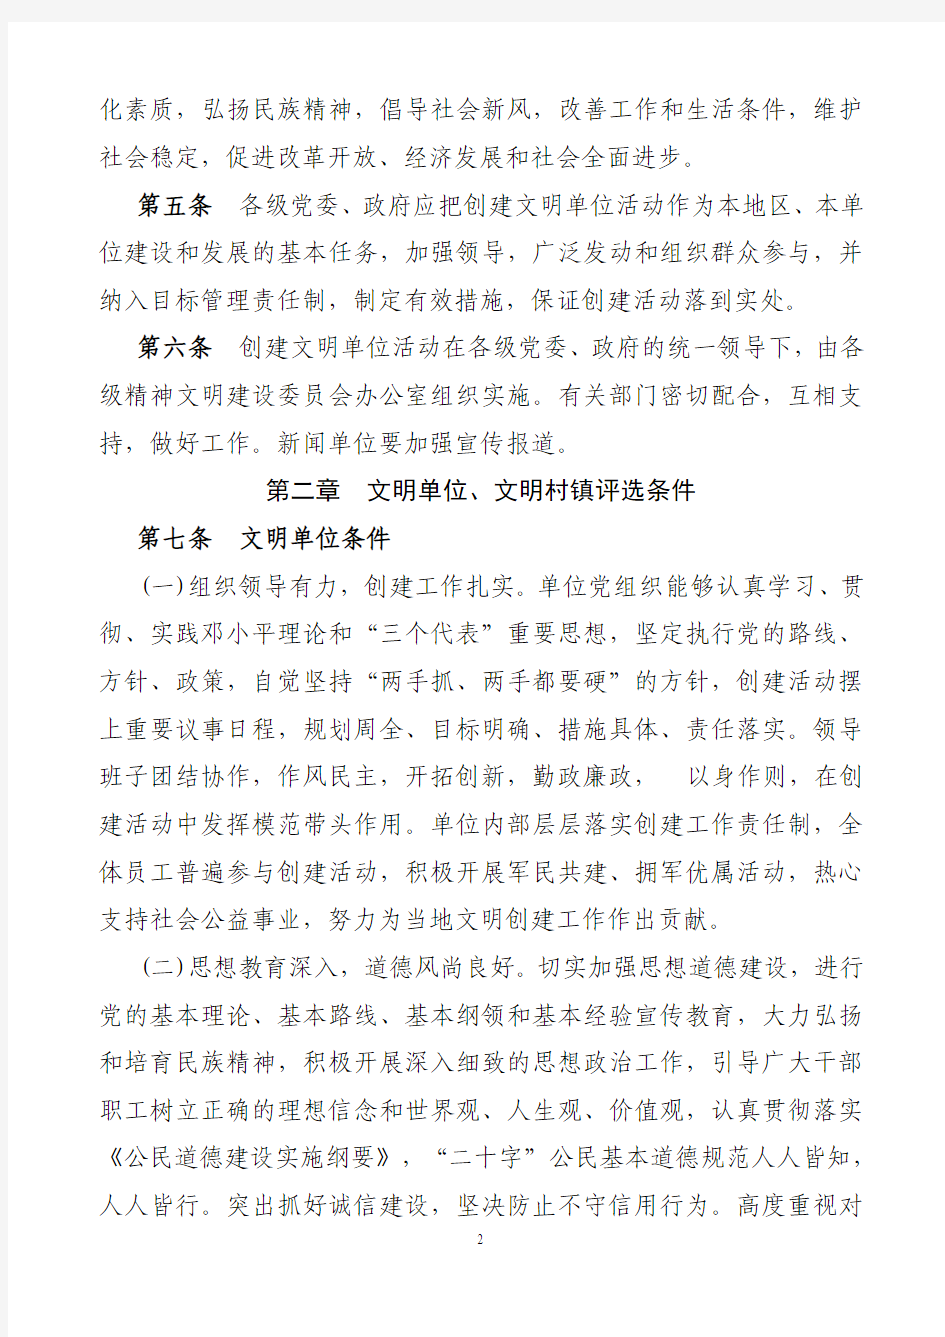 重庆市文明单位建设与管理办法-06.2.21